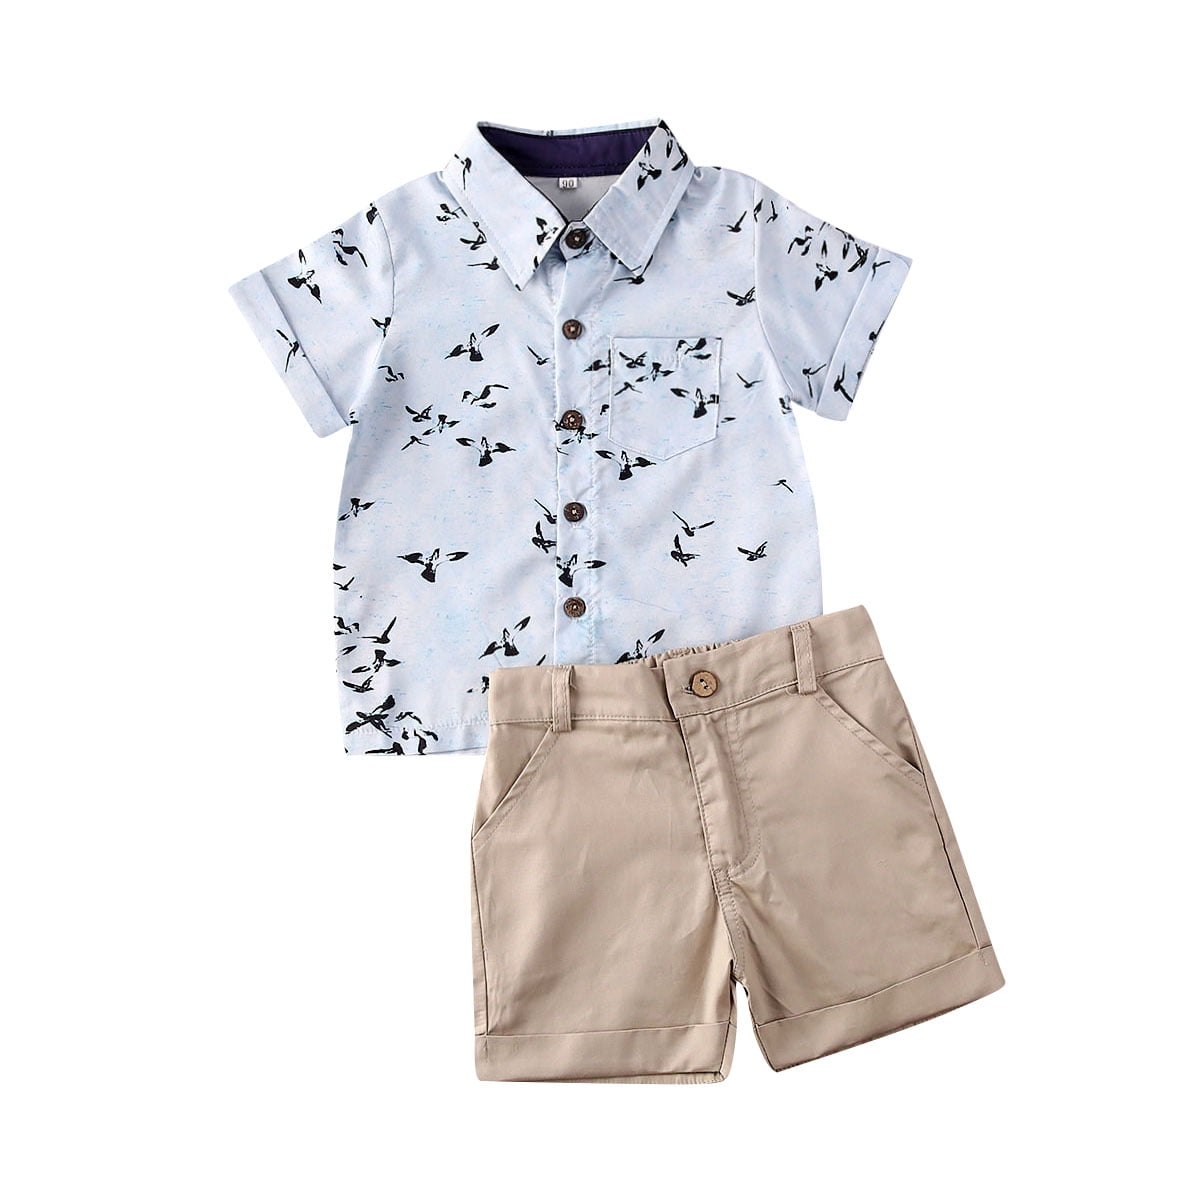 2PCS Kid Toddler Baby Boys Summer T Shirt Tops+Shorts Pants Outfits Clothes Set 